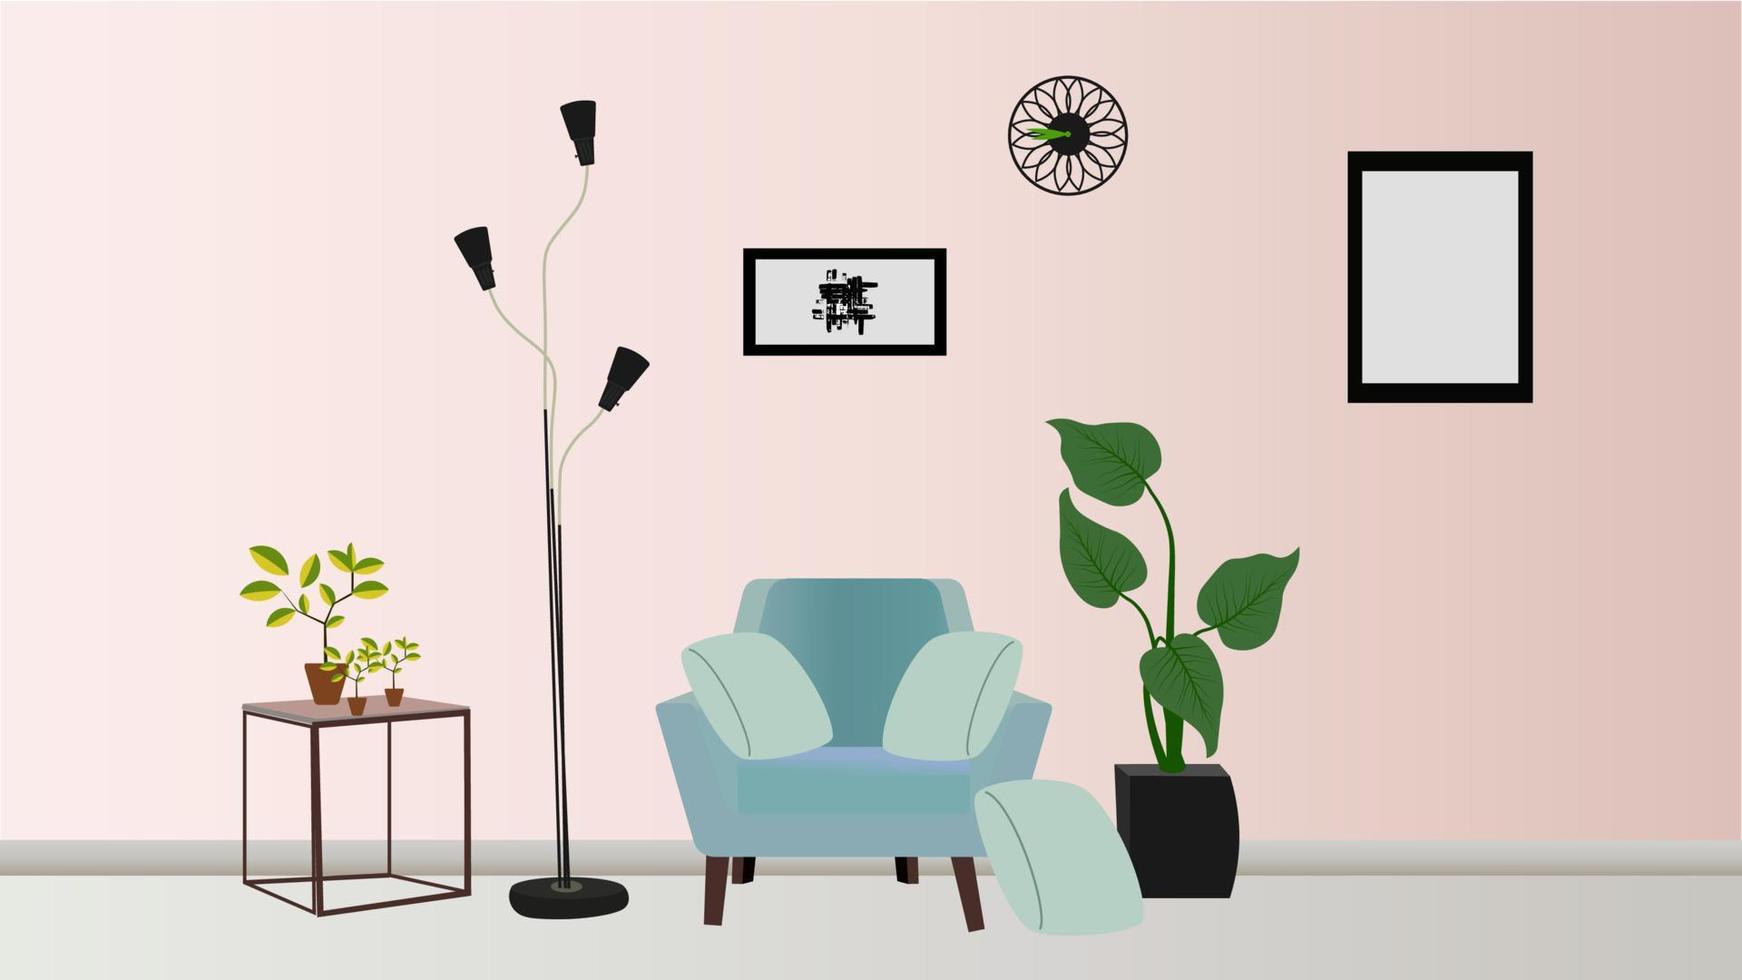 leven kamer interieur.modern vlak illustratie met huiskamer interieur in pastel roze kleuren, licht achtergrond voor concept ontwerp vector